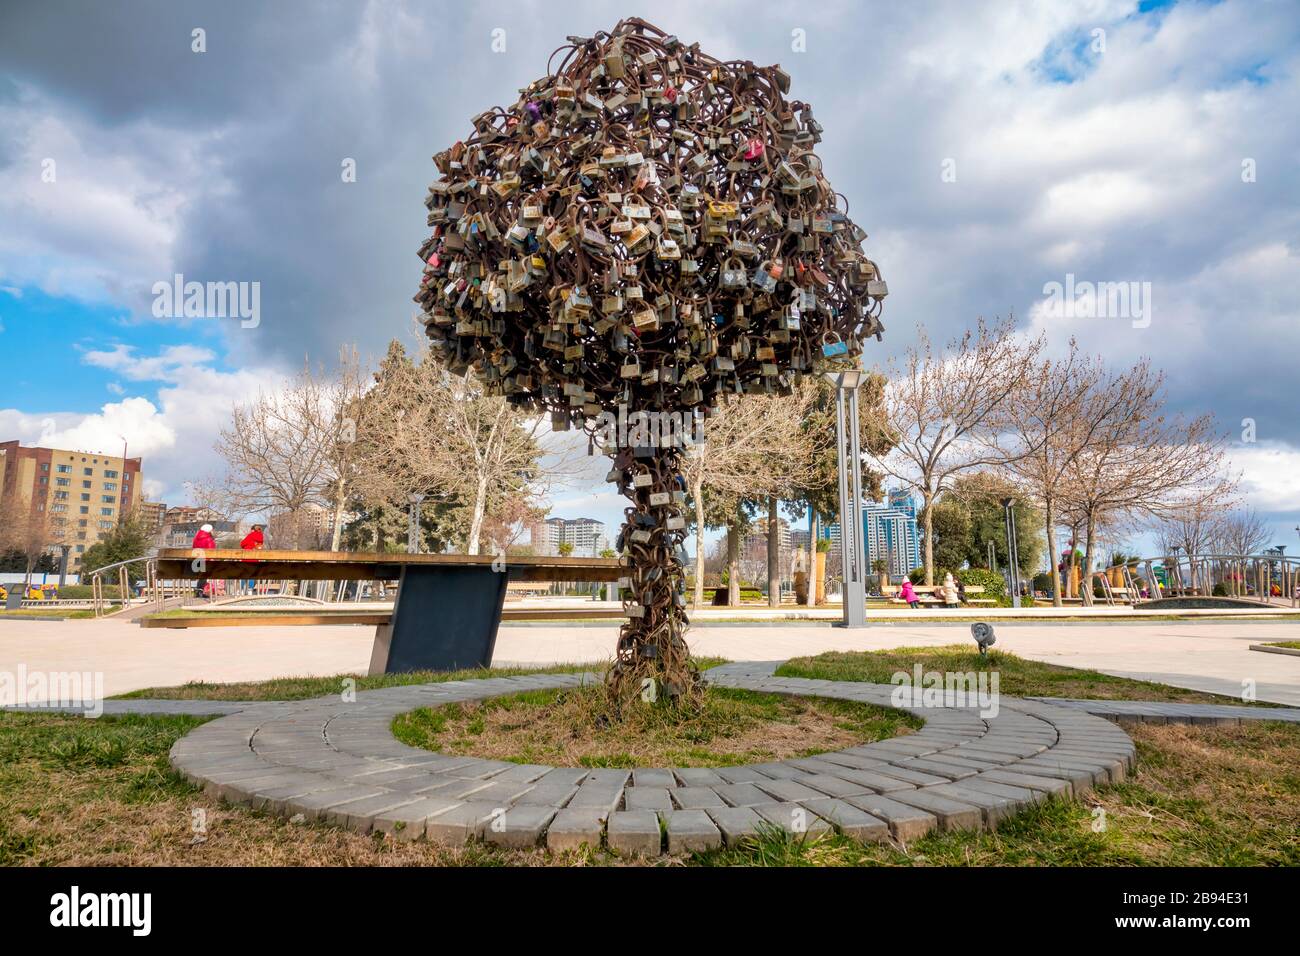 Iron padlock tree on the boulevard, Baku, Azerbaijan Stock Photo